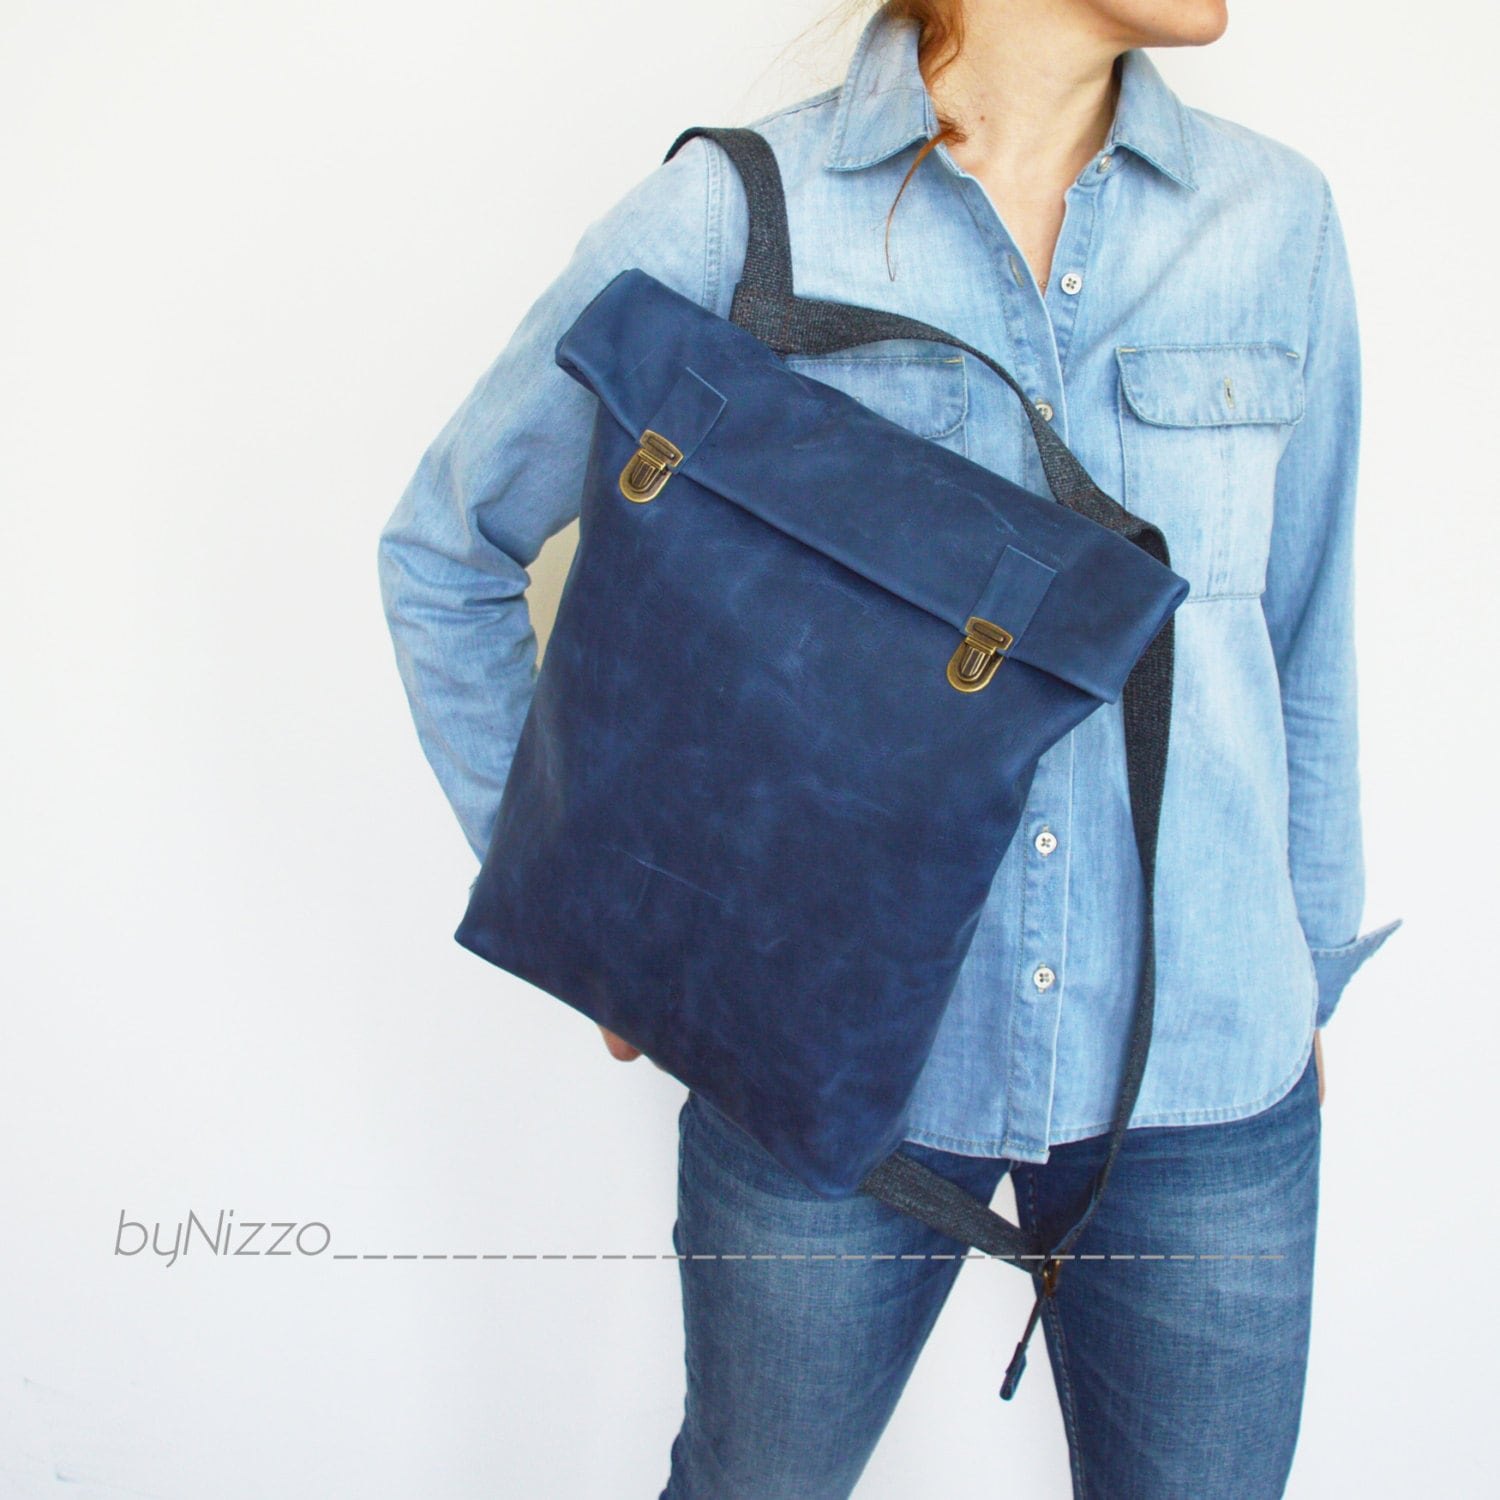 celine blue backpack  